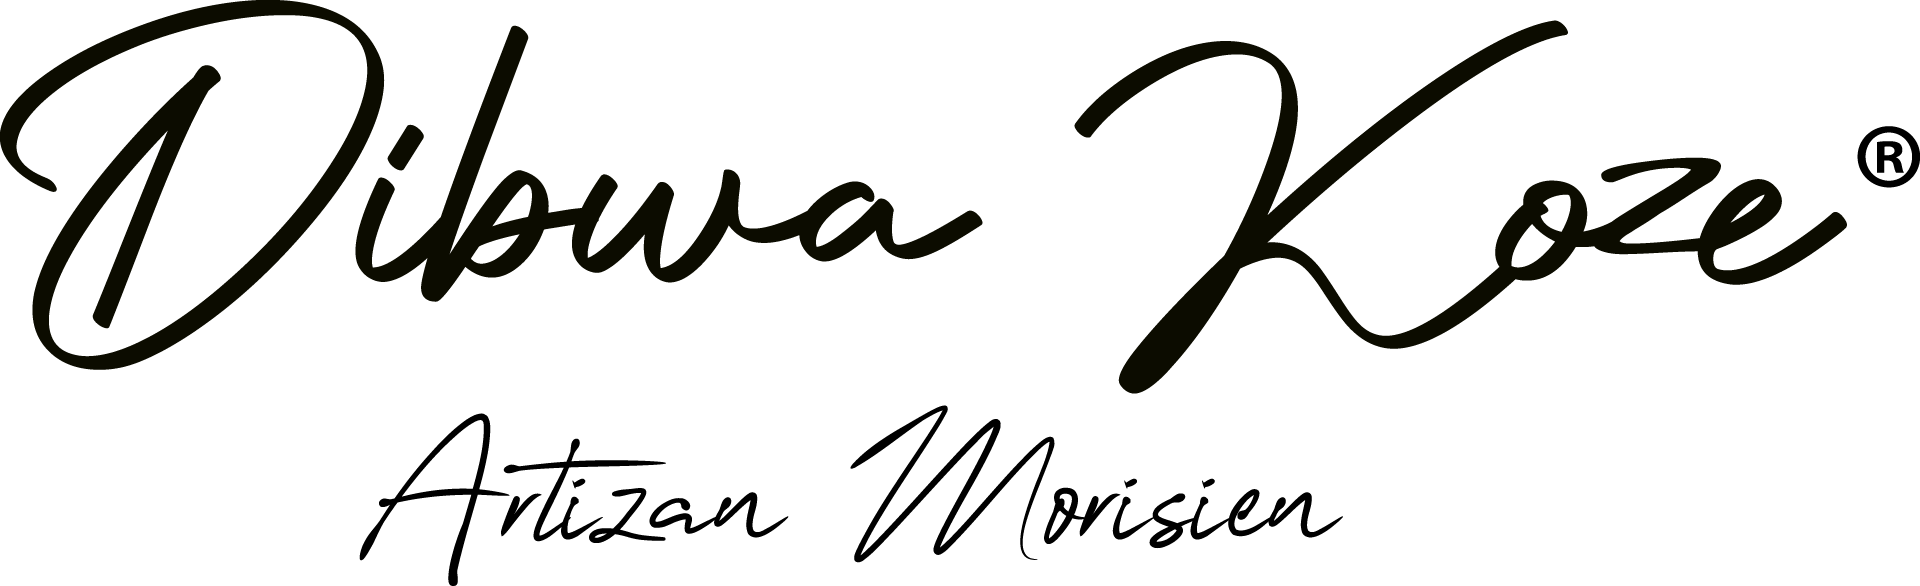 Dibwa Koze logo